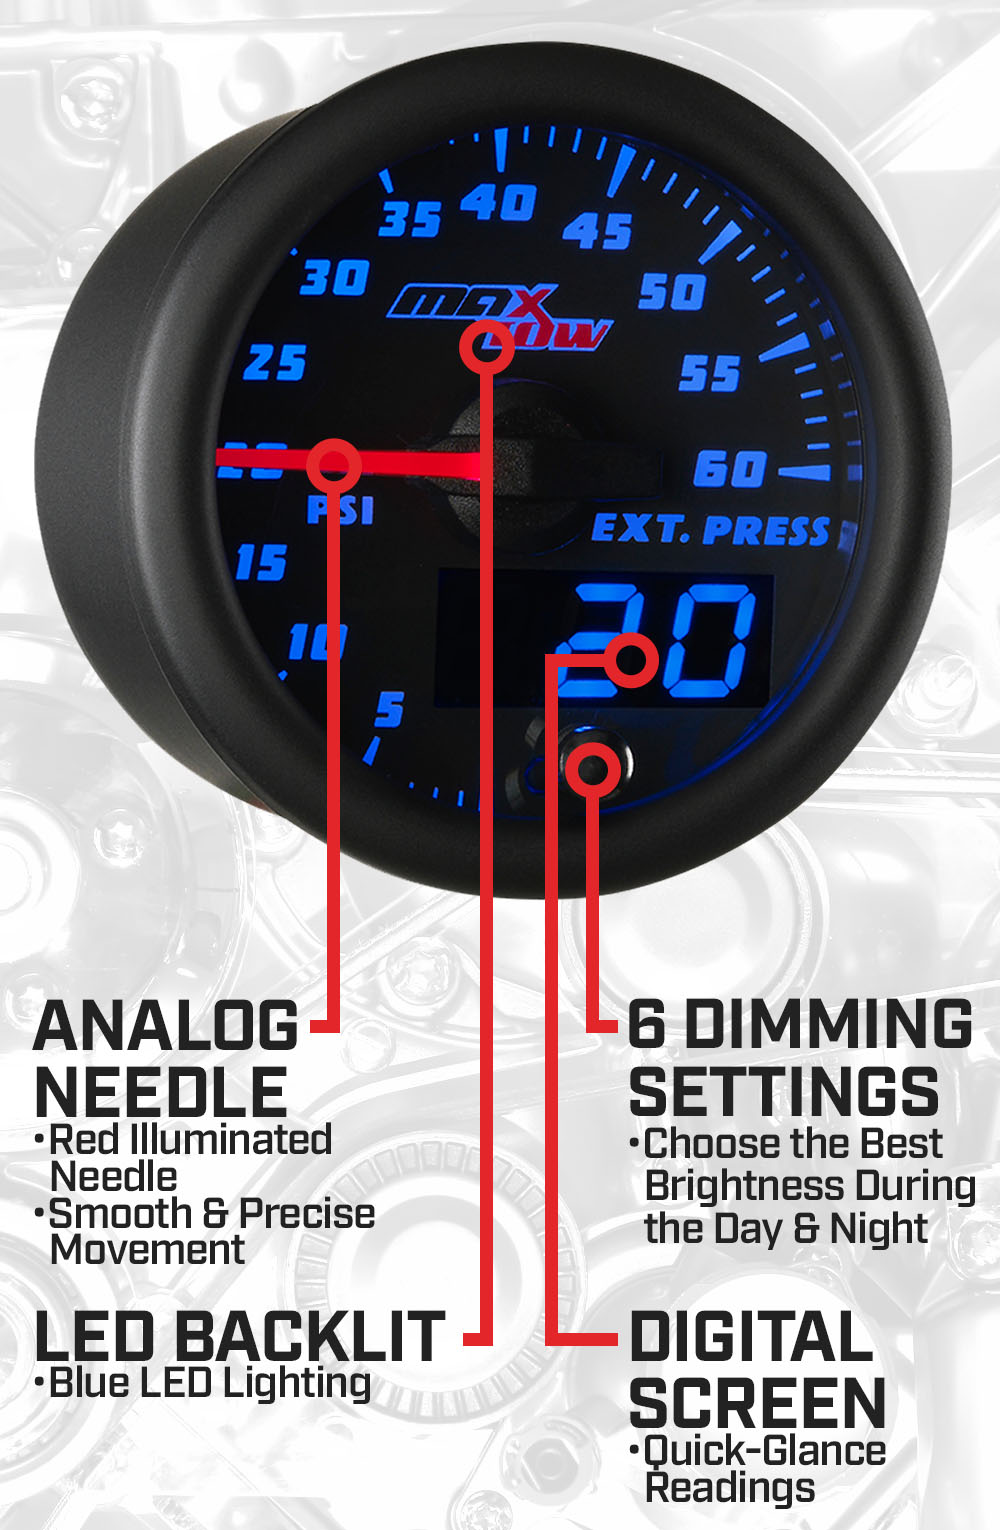 Black & Blue Double Vision 60 PSI Drive Pressure Gauge Features